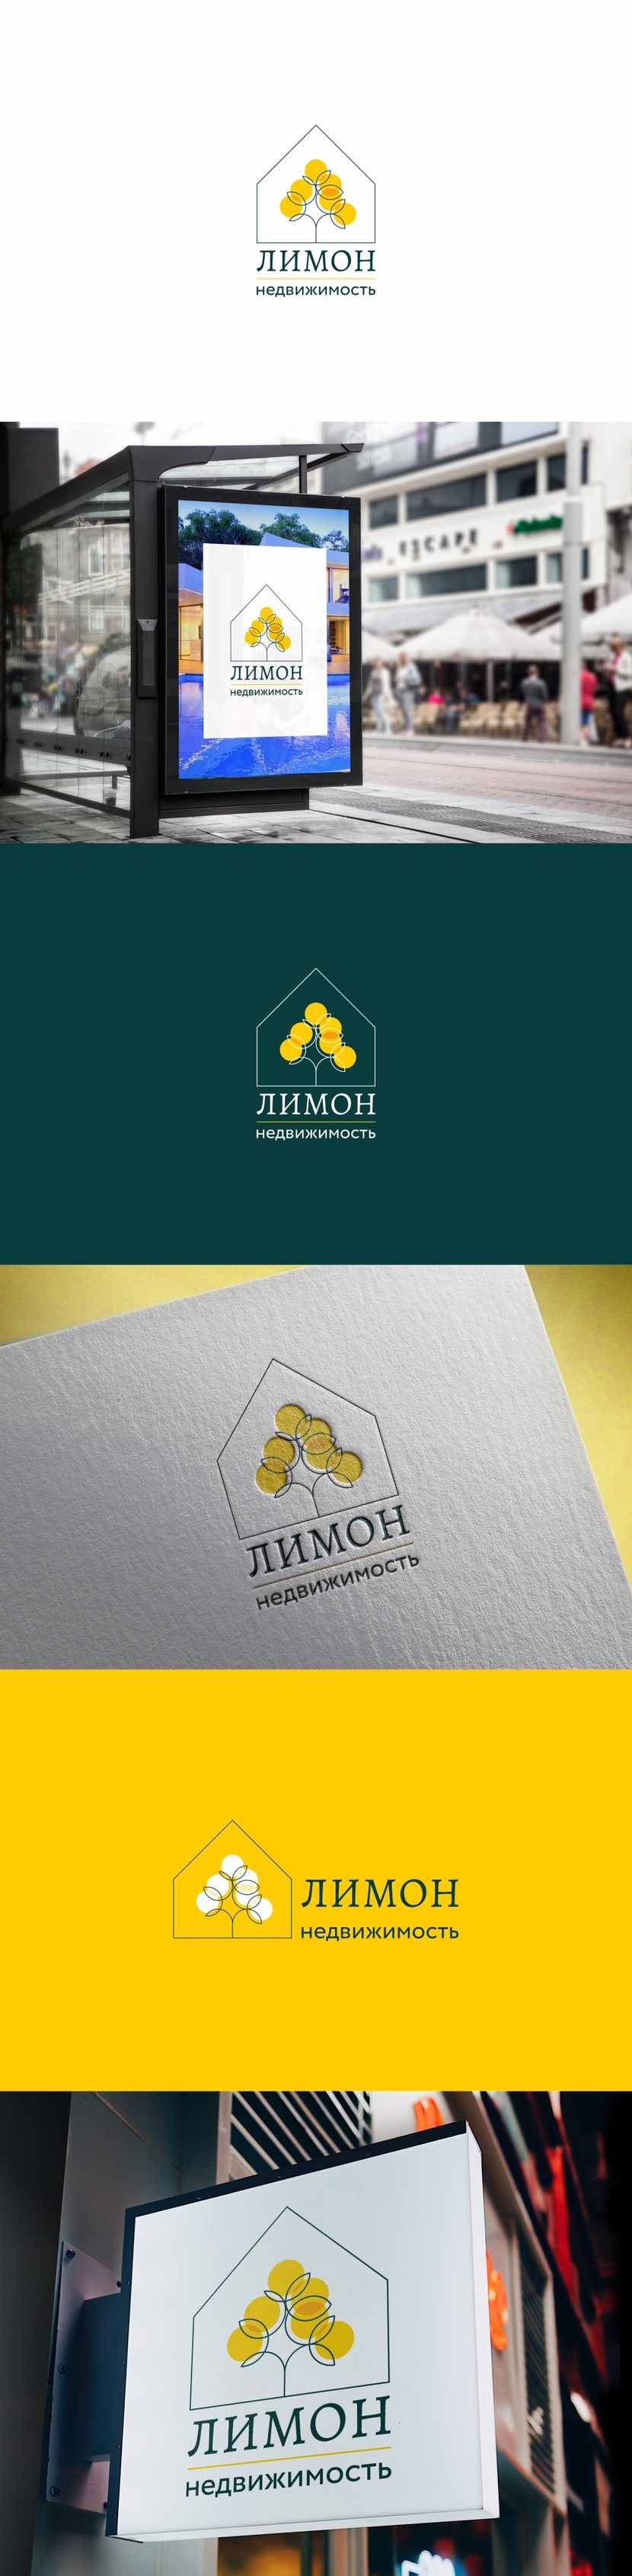 Логотип и фирменный стиль для Агенства Недвижимости "Лимон Недвижимость"  работа №861131